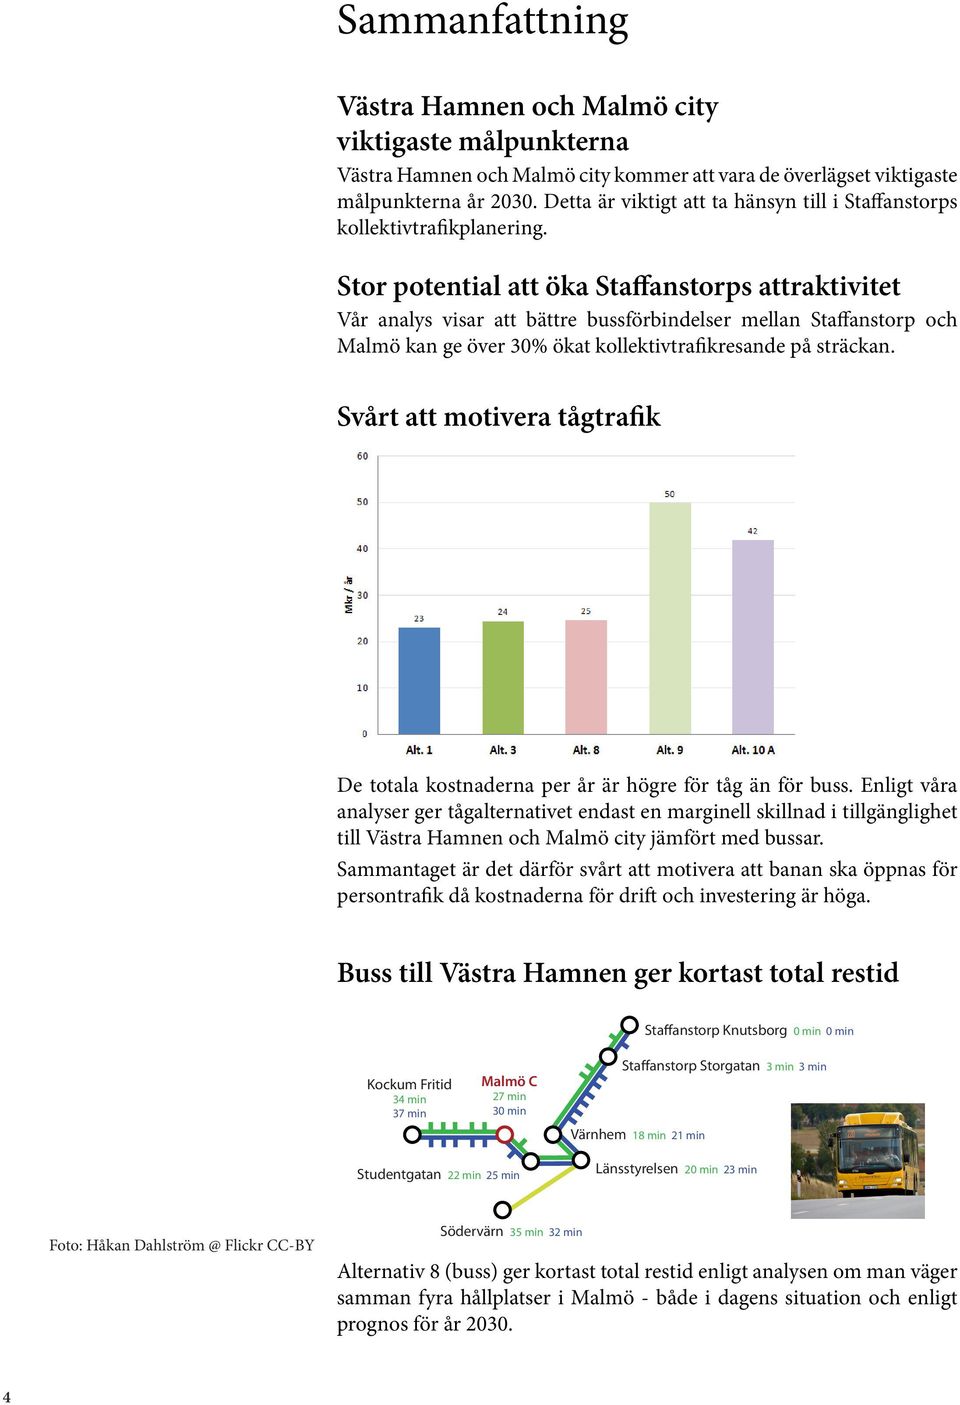 Stor potential att öka Staffanstorps attraktivitet Vår analys visar att bättre bussförbindelser mellan Staffanstorp och Malmö kan ge över 30% ökat kollektivtrafikresande på sträckan.